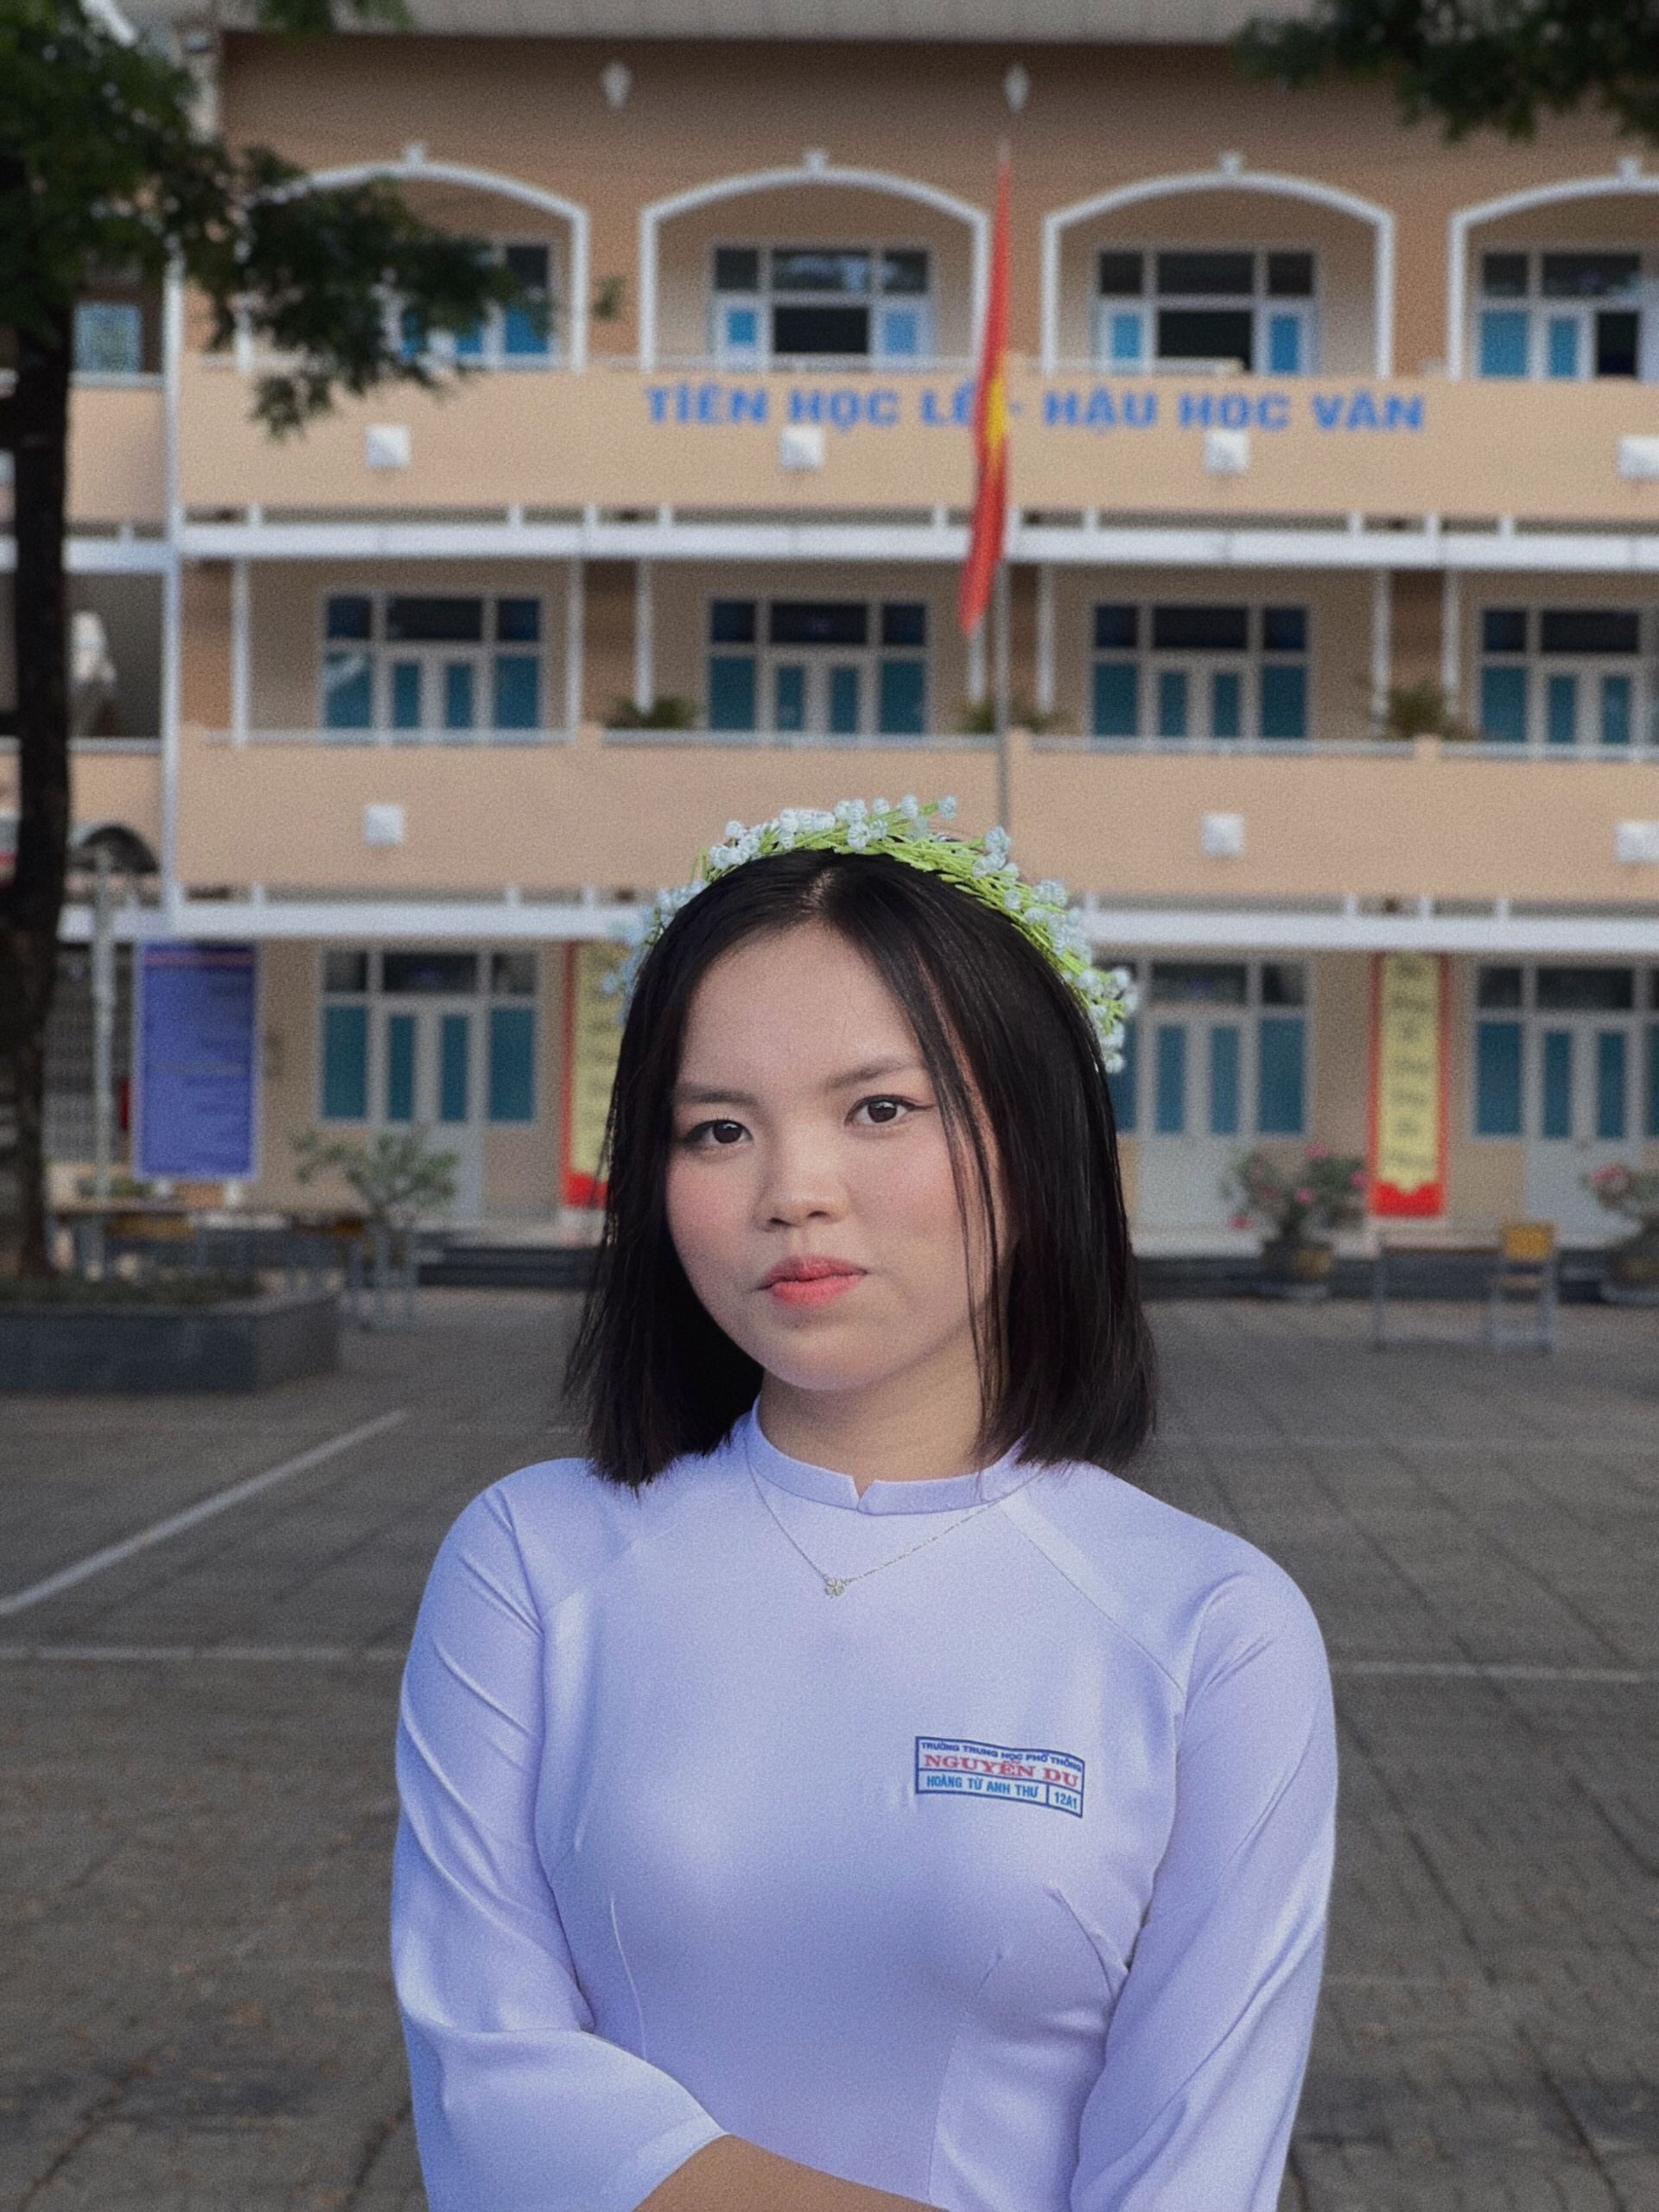 Từng sốc khi trượt chuyên vào lớp 10, nữ sinh Bà Rịa - Vũng Tàu quyết tâm bứt phá, 3 năm sau đạt thành quả đáng nể - Ảnh 3.